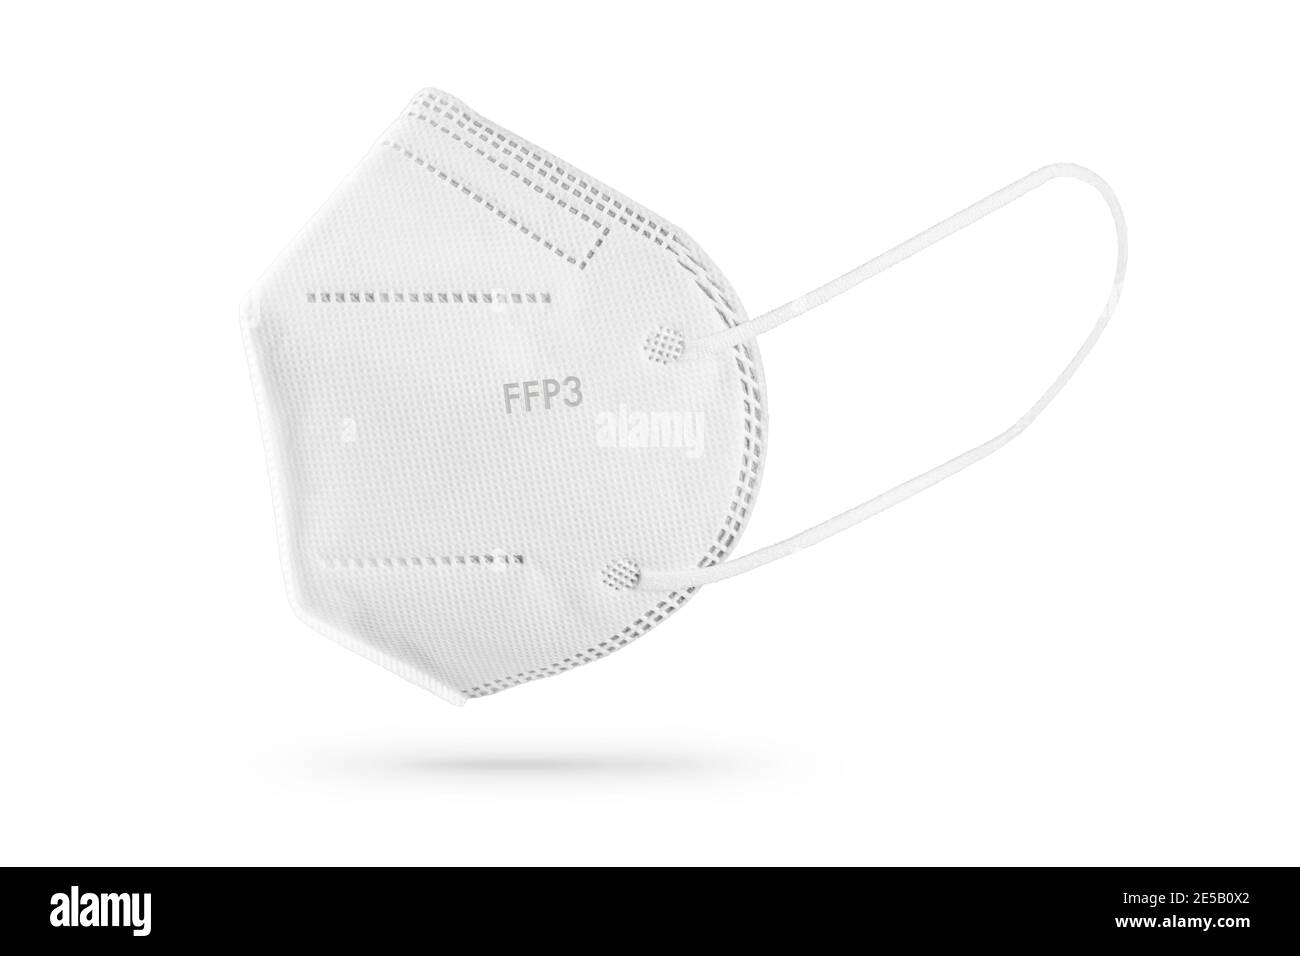 FFP3-Gesichtsmaske auf weißem Hintergrund isoliert. Persönliche Schutzausrüstung gegen Coronavirus Covid-19 Stockfoto